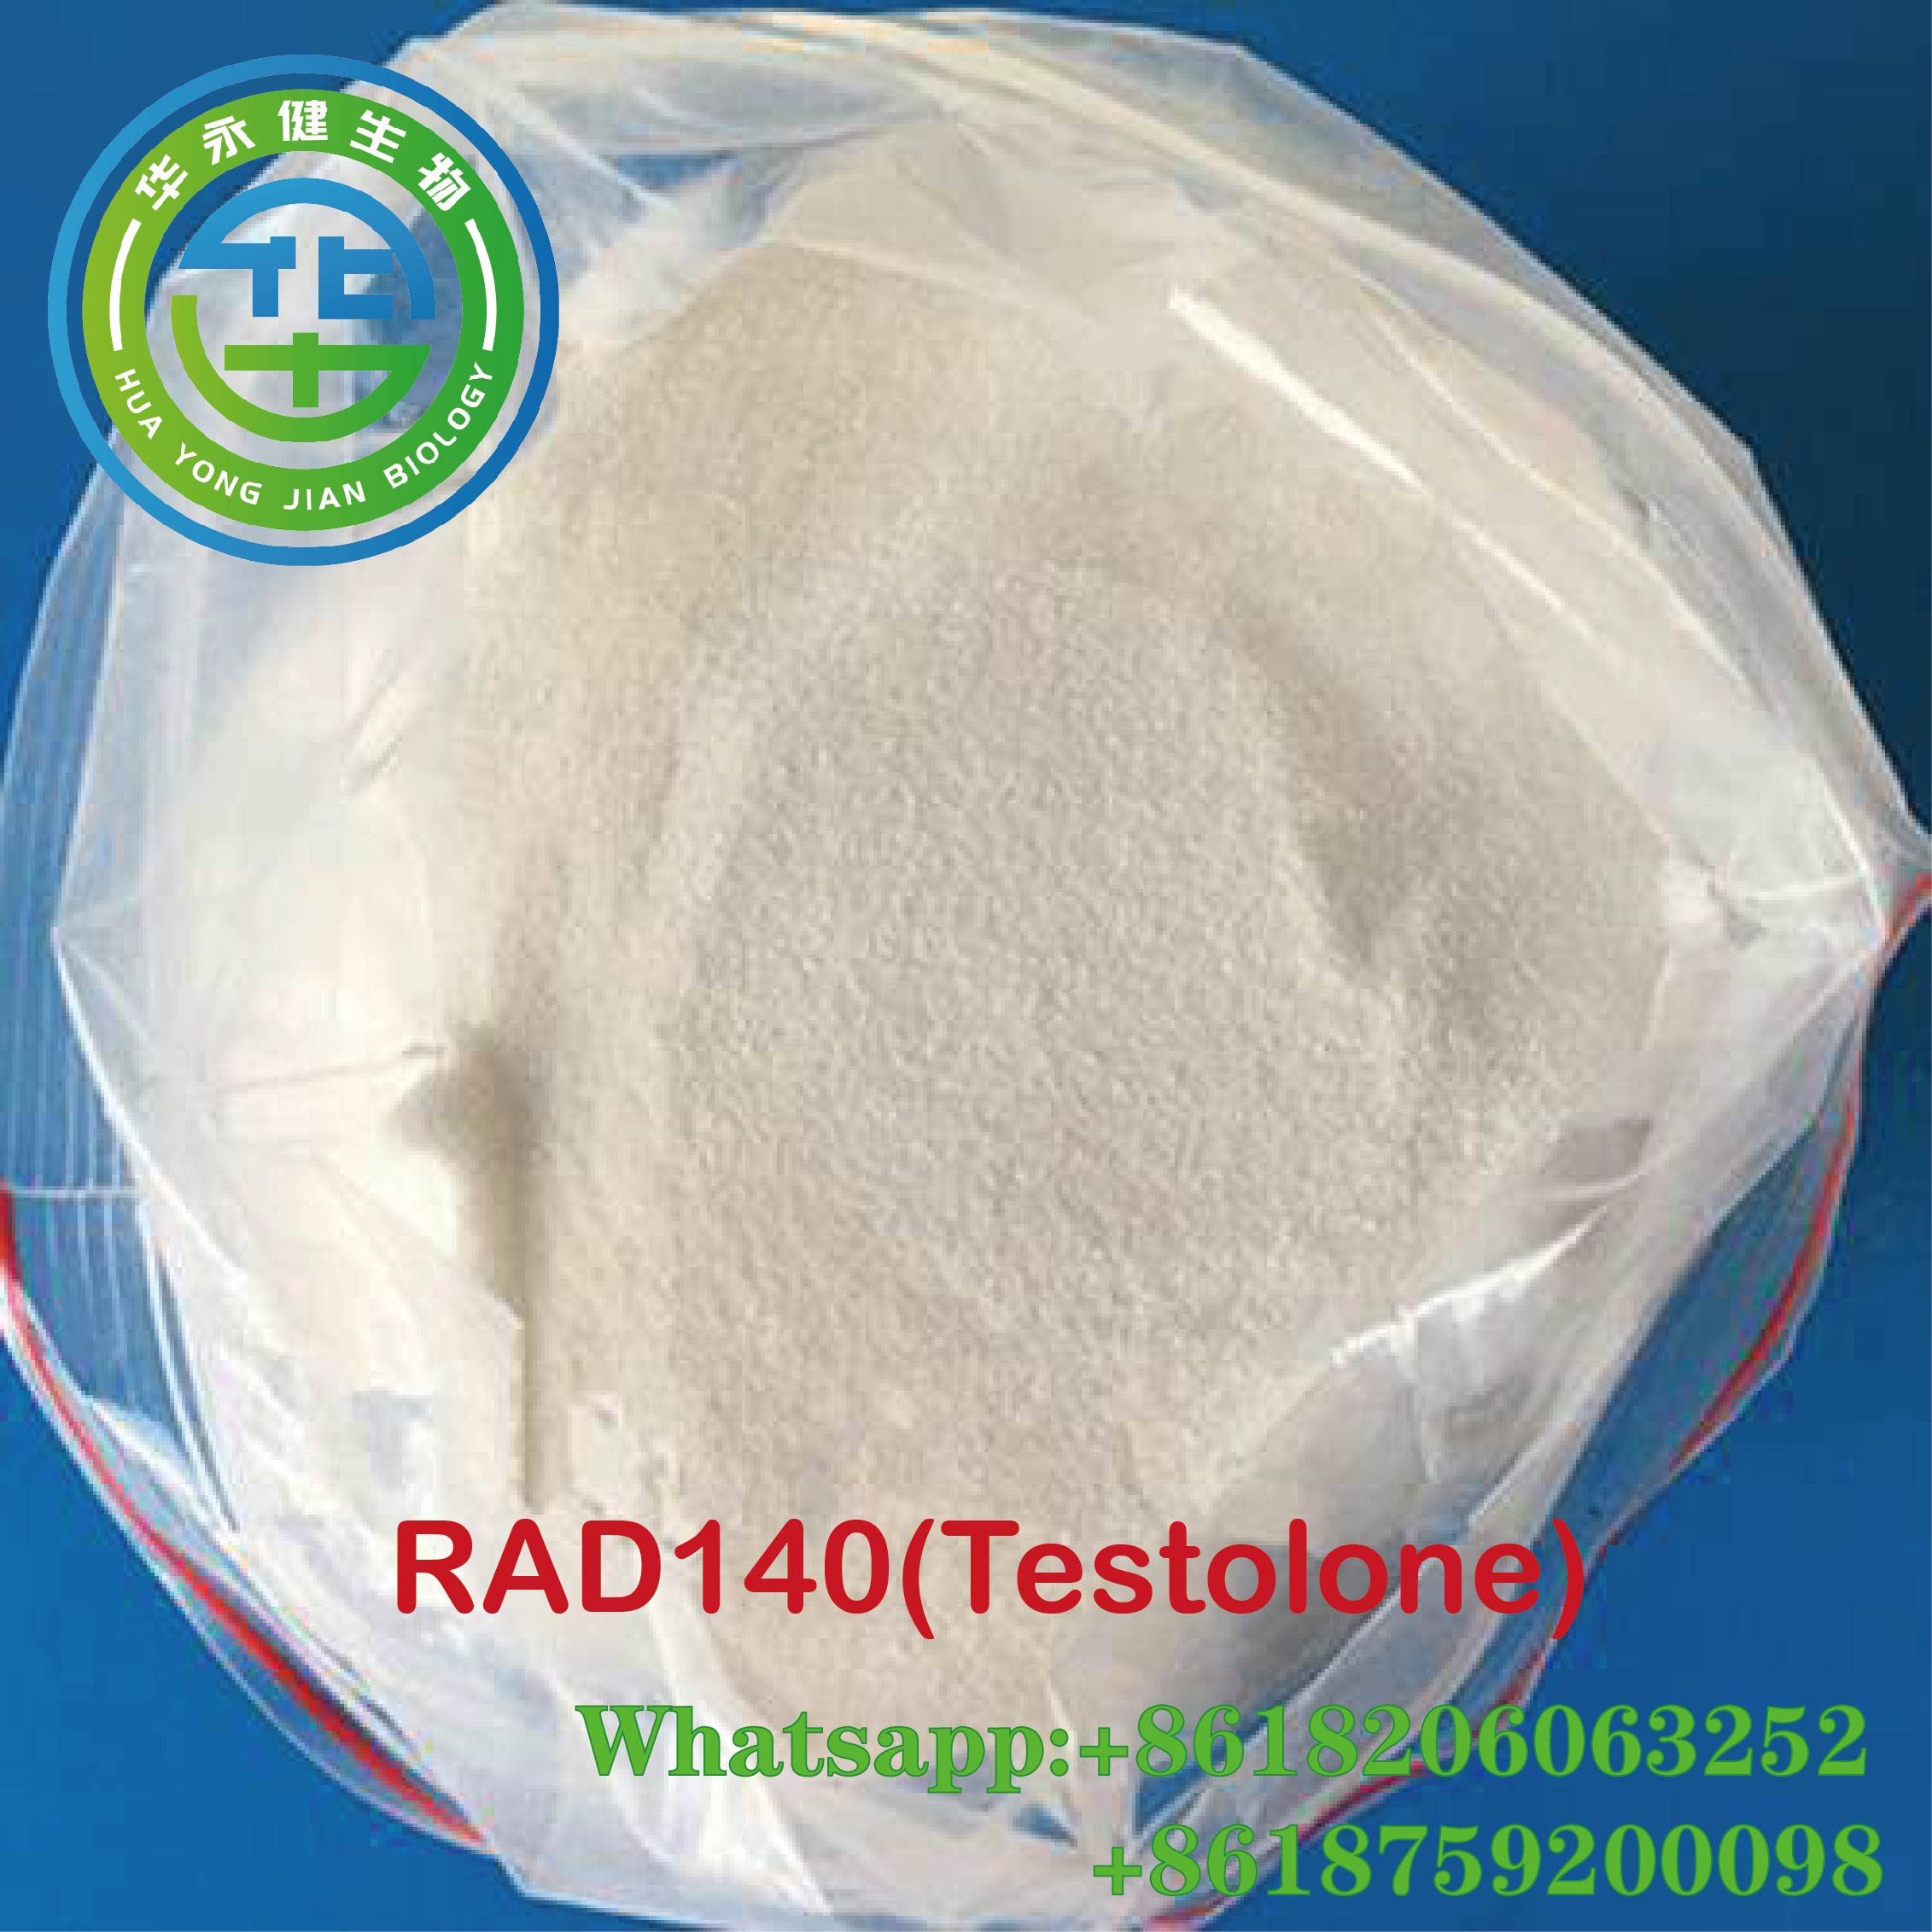 RAD140 Fat Loss Powder Testolone lyfjafræðilegt milliefni með öruggri afhendingu CasNO.118237-47-0 Valin mynd